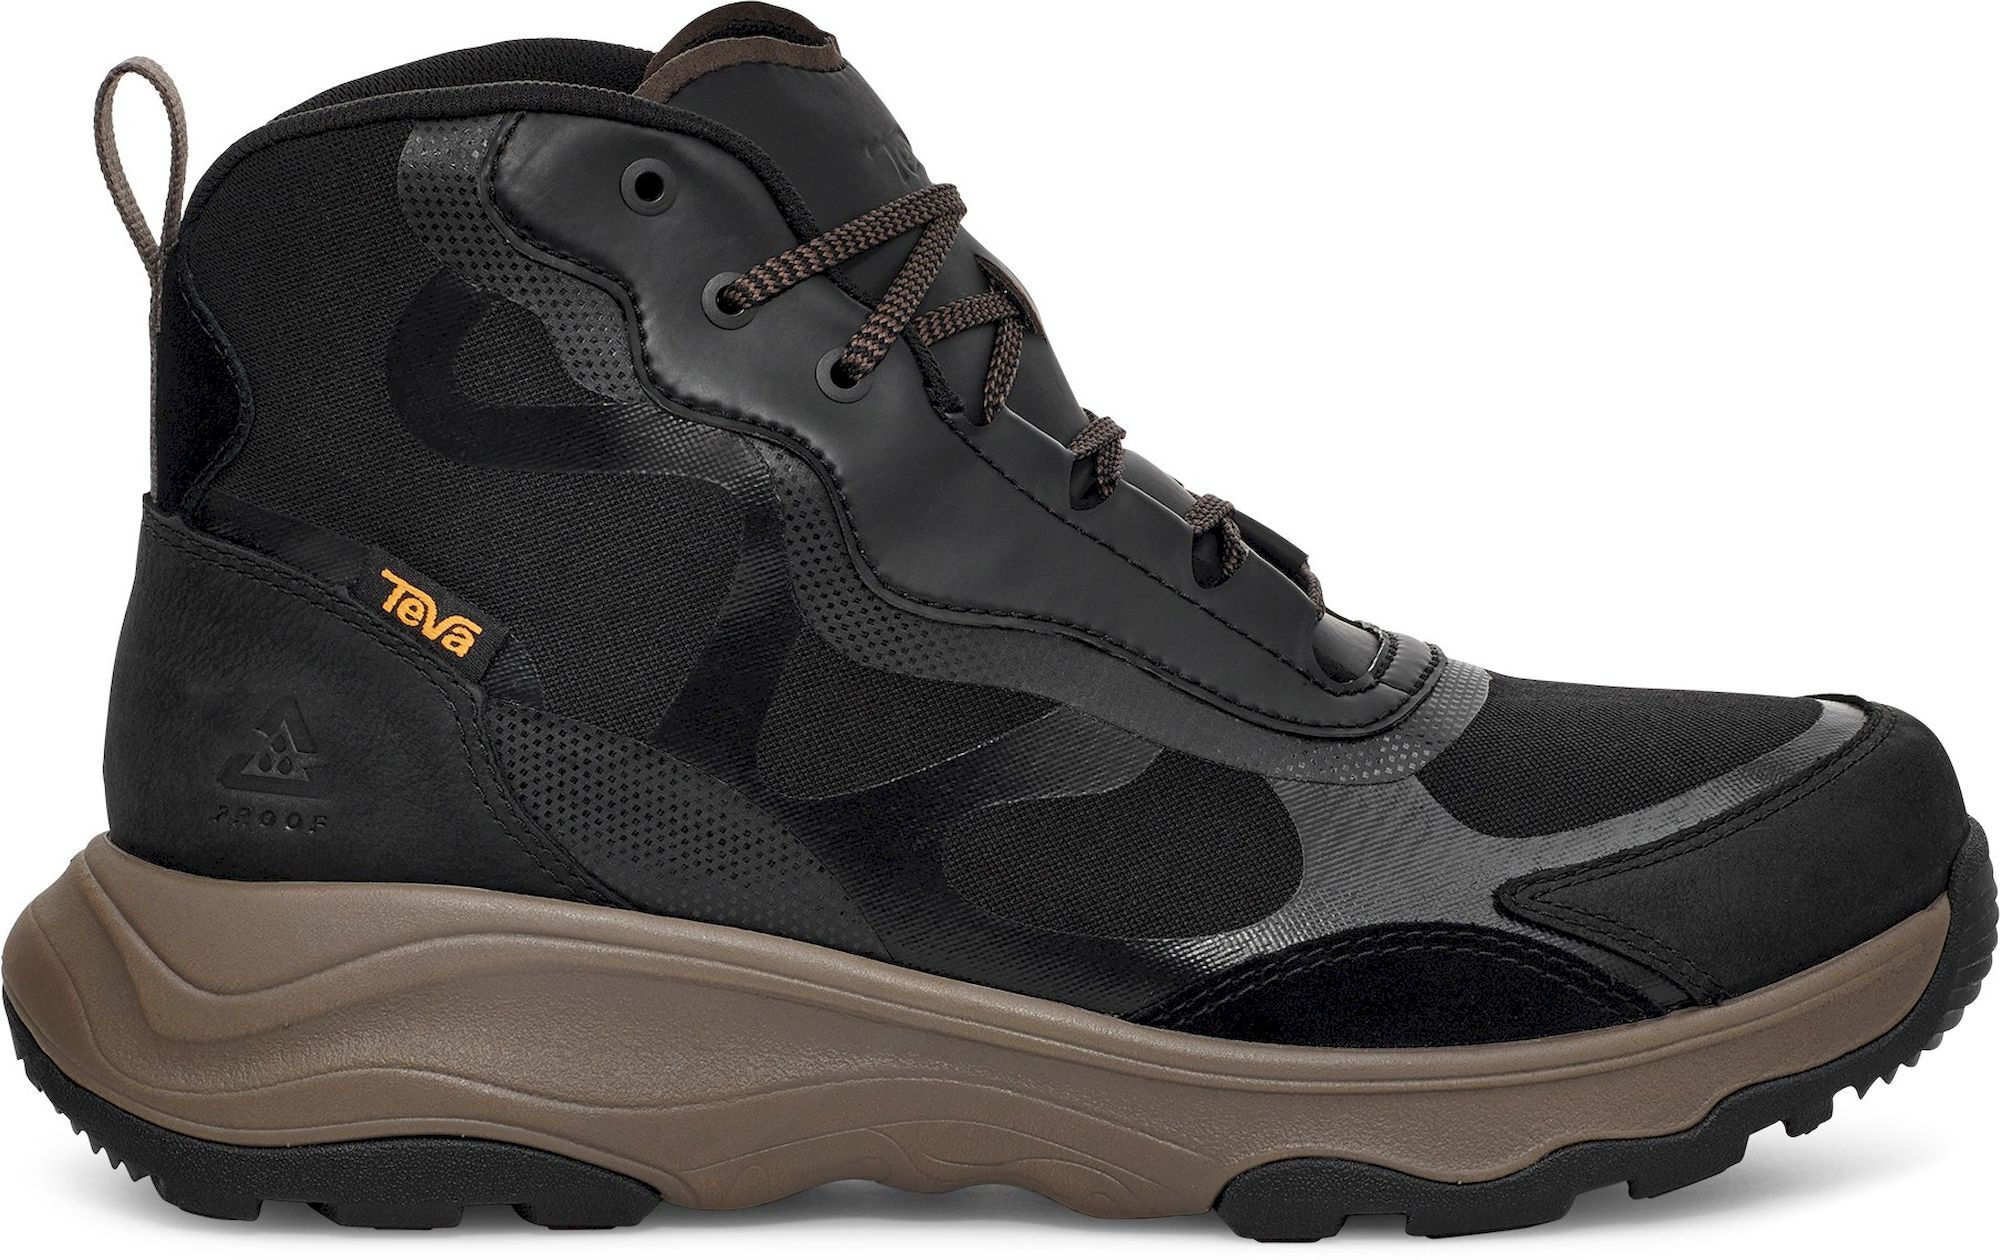 Teva Geotrecca RP - Hiking shoes - Men's